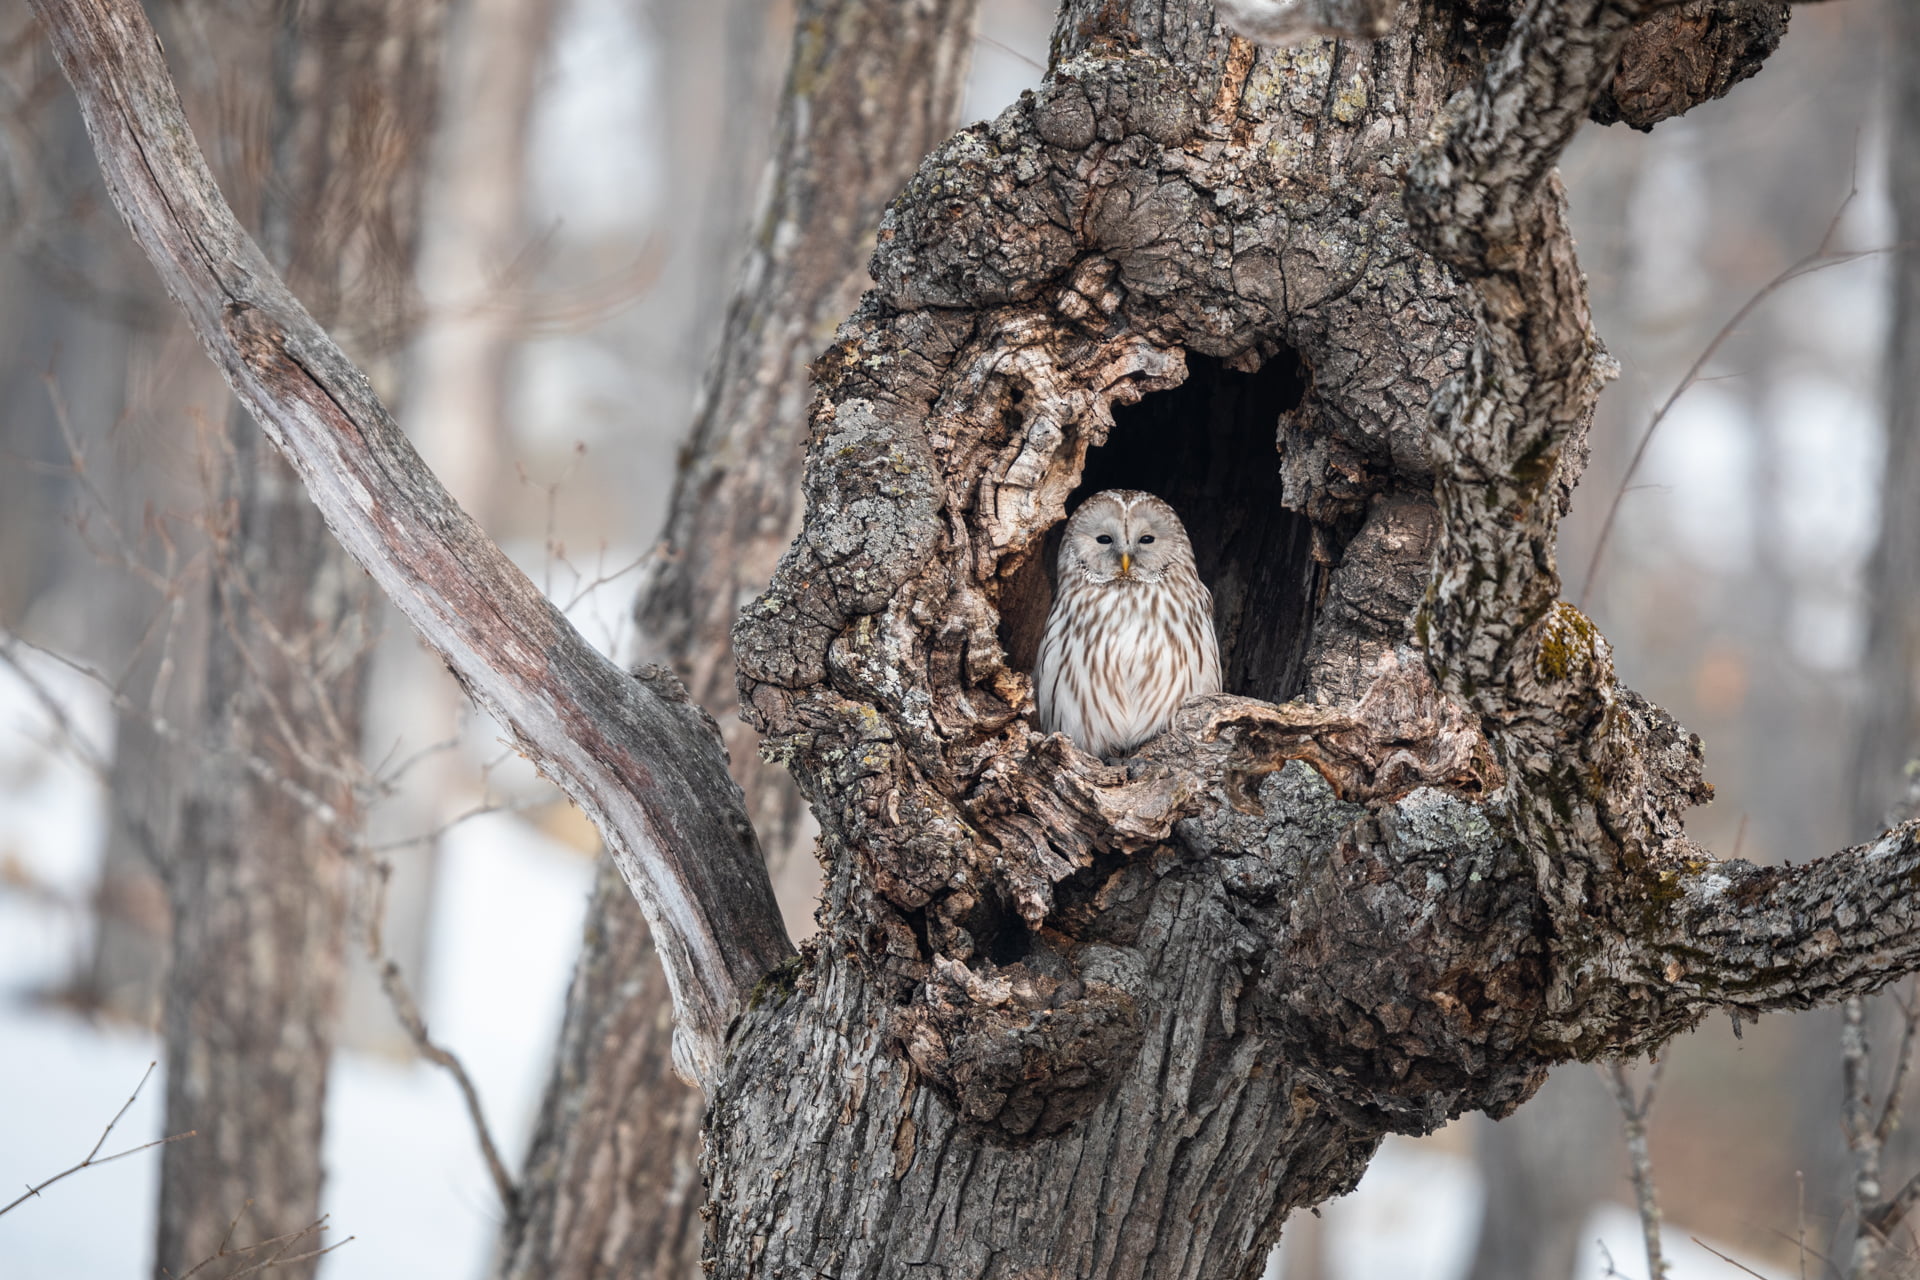 Chouette de l'Oural est dans le trou d'un arbre, Hokkaido, Japon - Ural Owl is in a hole tree, Hokkaido, Japan / Strix uralensis